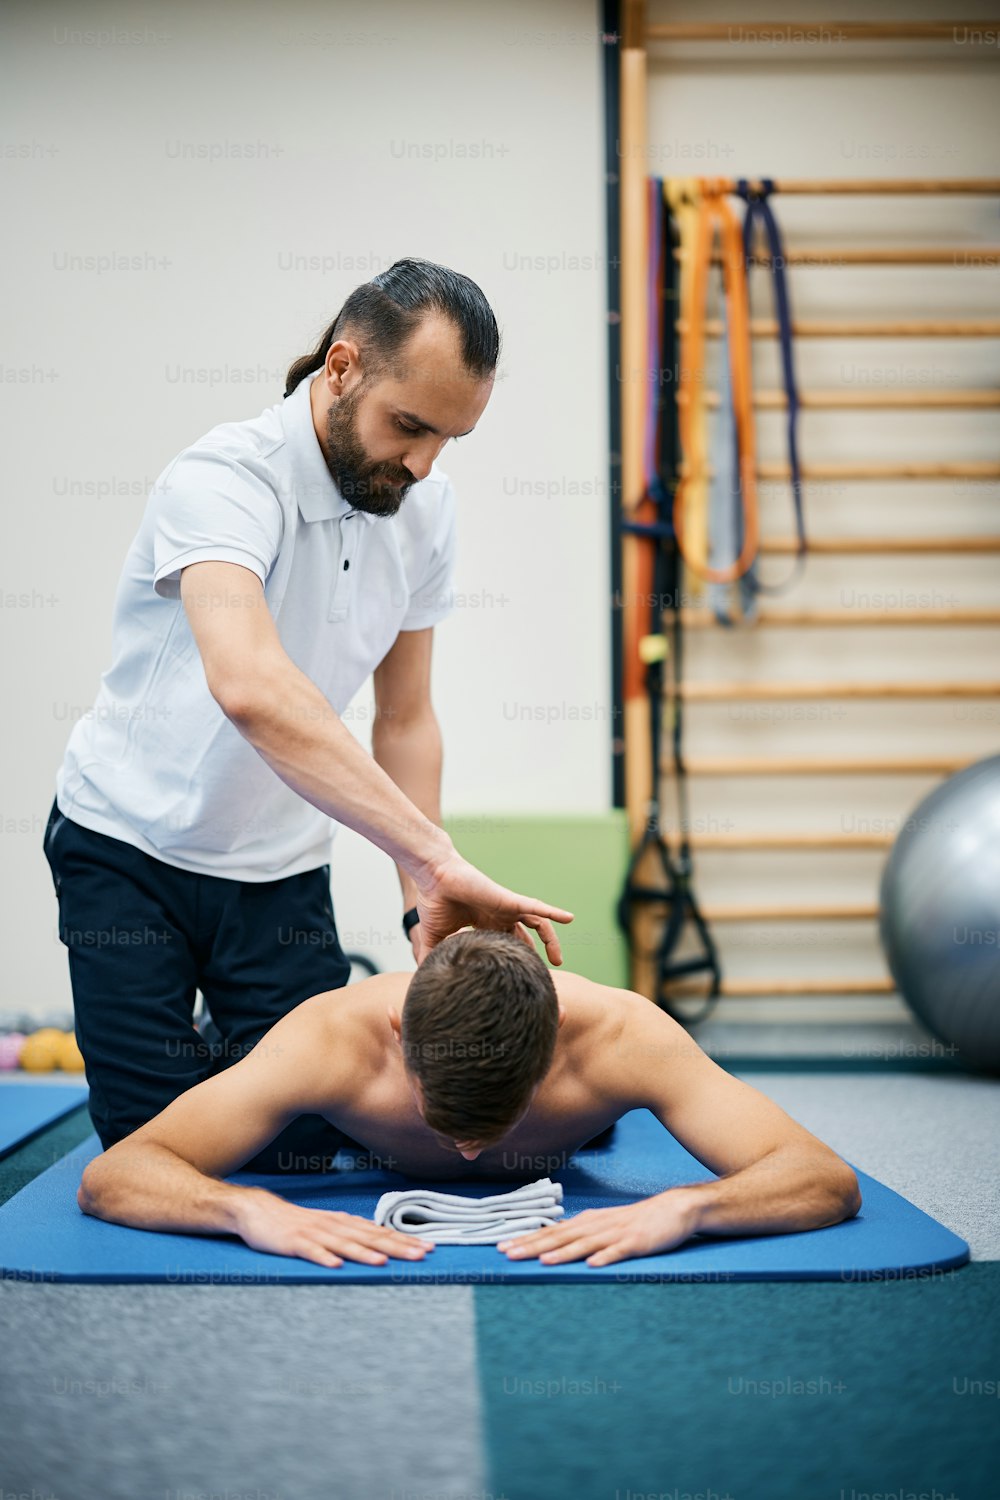 Physiotherapeut massiert den Nacken des Athleten während der Rehabilitationsbehandlung im Fitnessstudio.